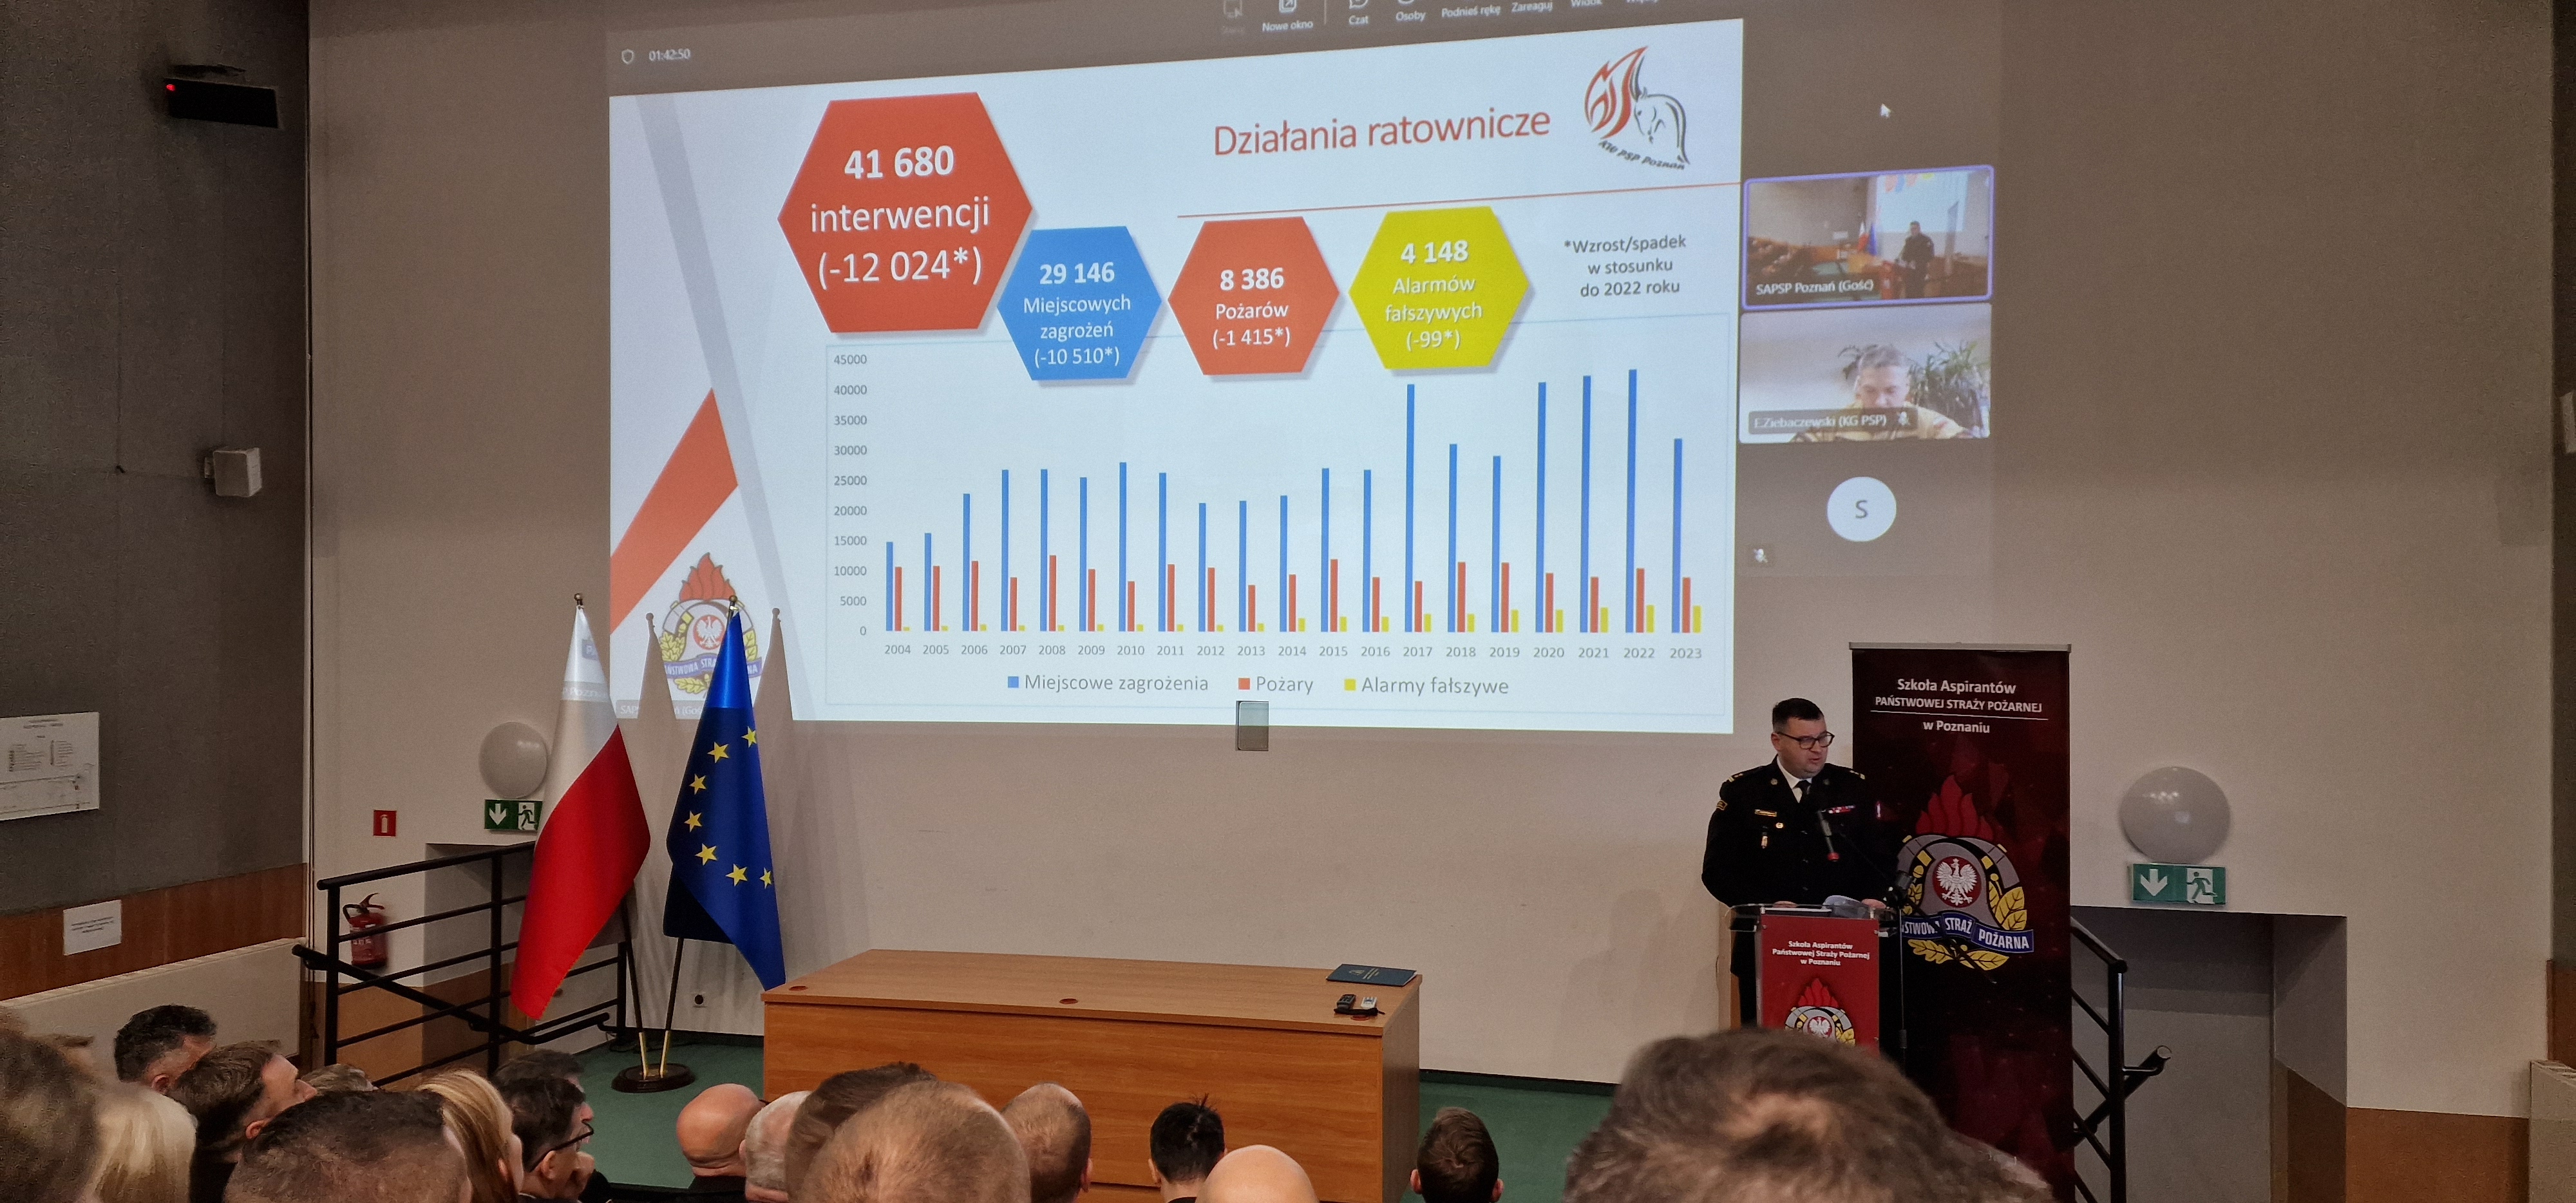 Przy mównicy przemawia p.o. komendant wojewódzki PSP w Poznaniu, na ekranie wyświetlony slajd ze statystyką działań ratwoniczych